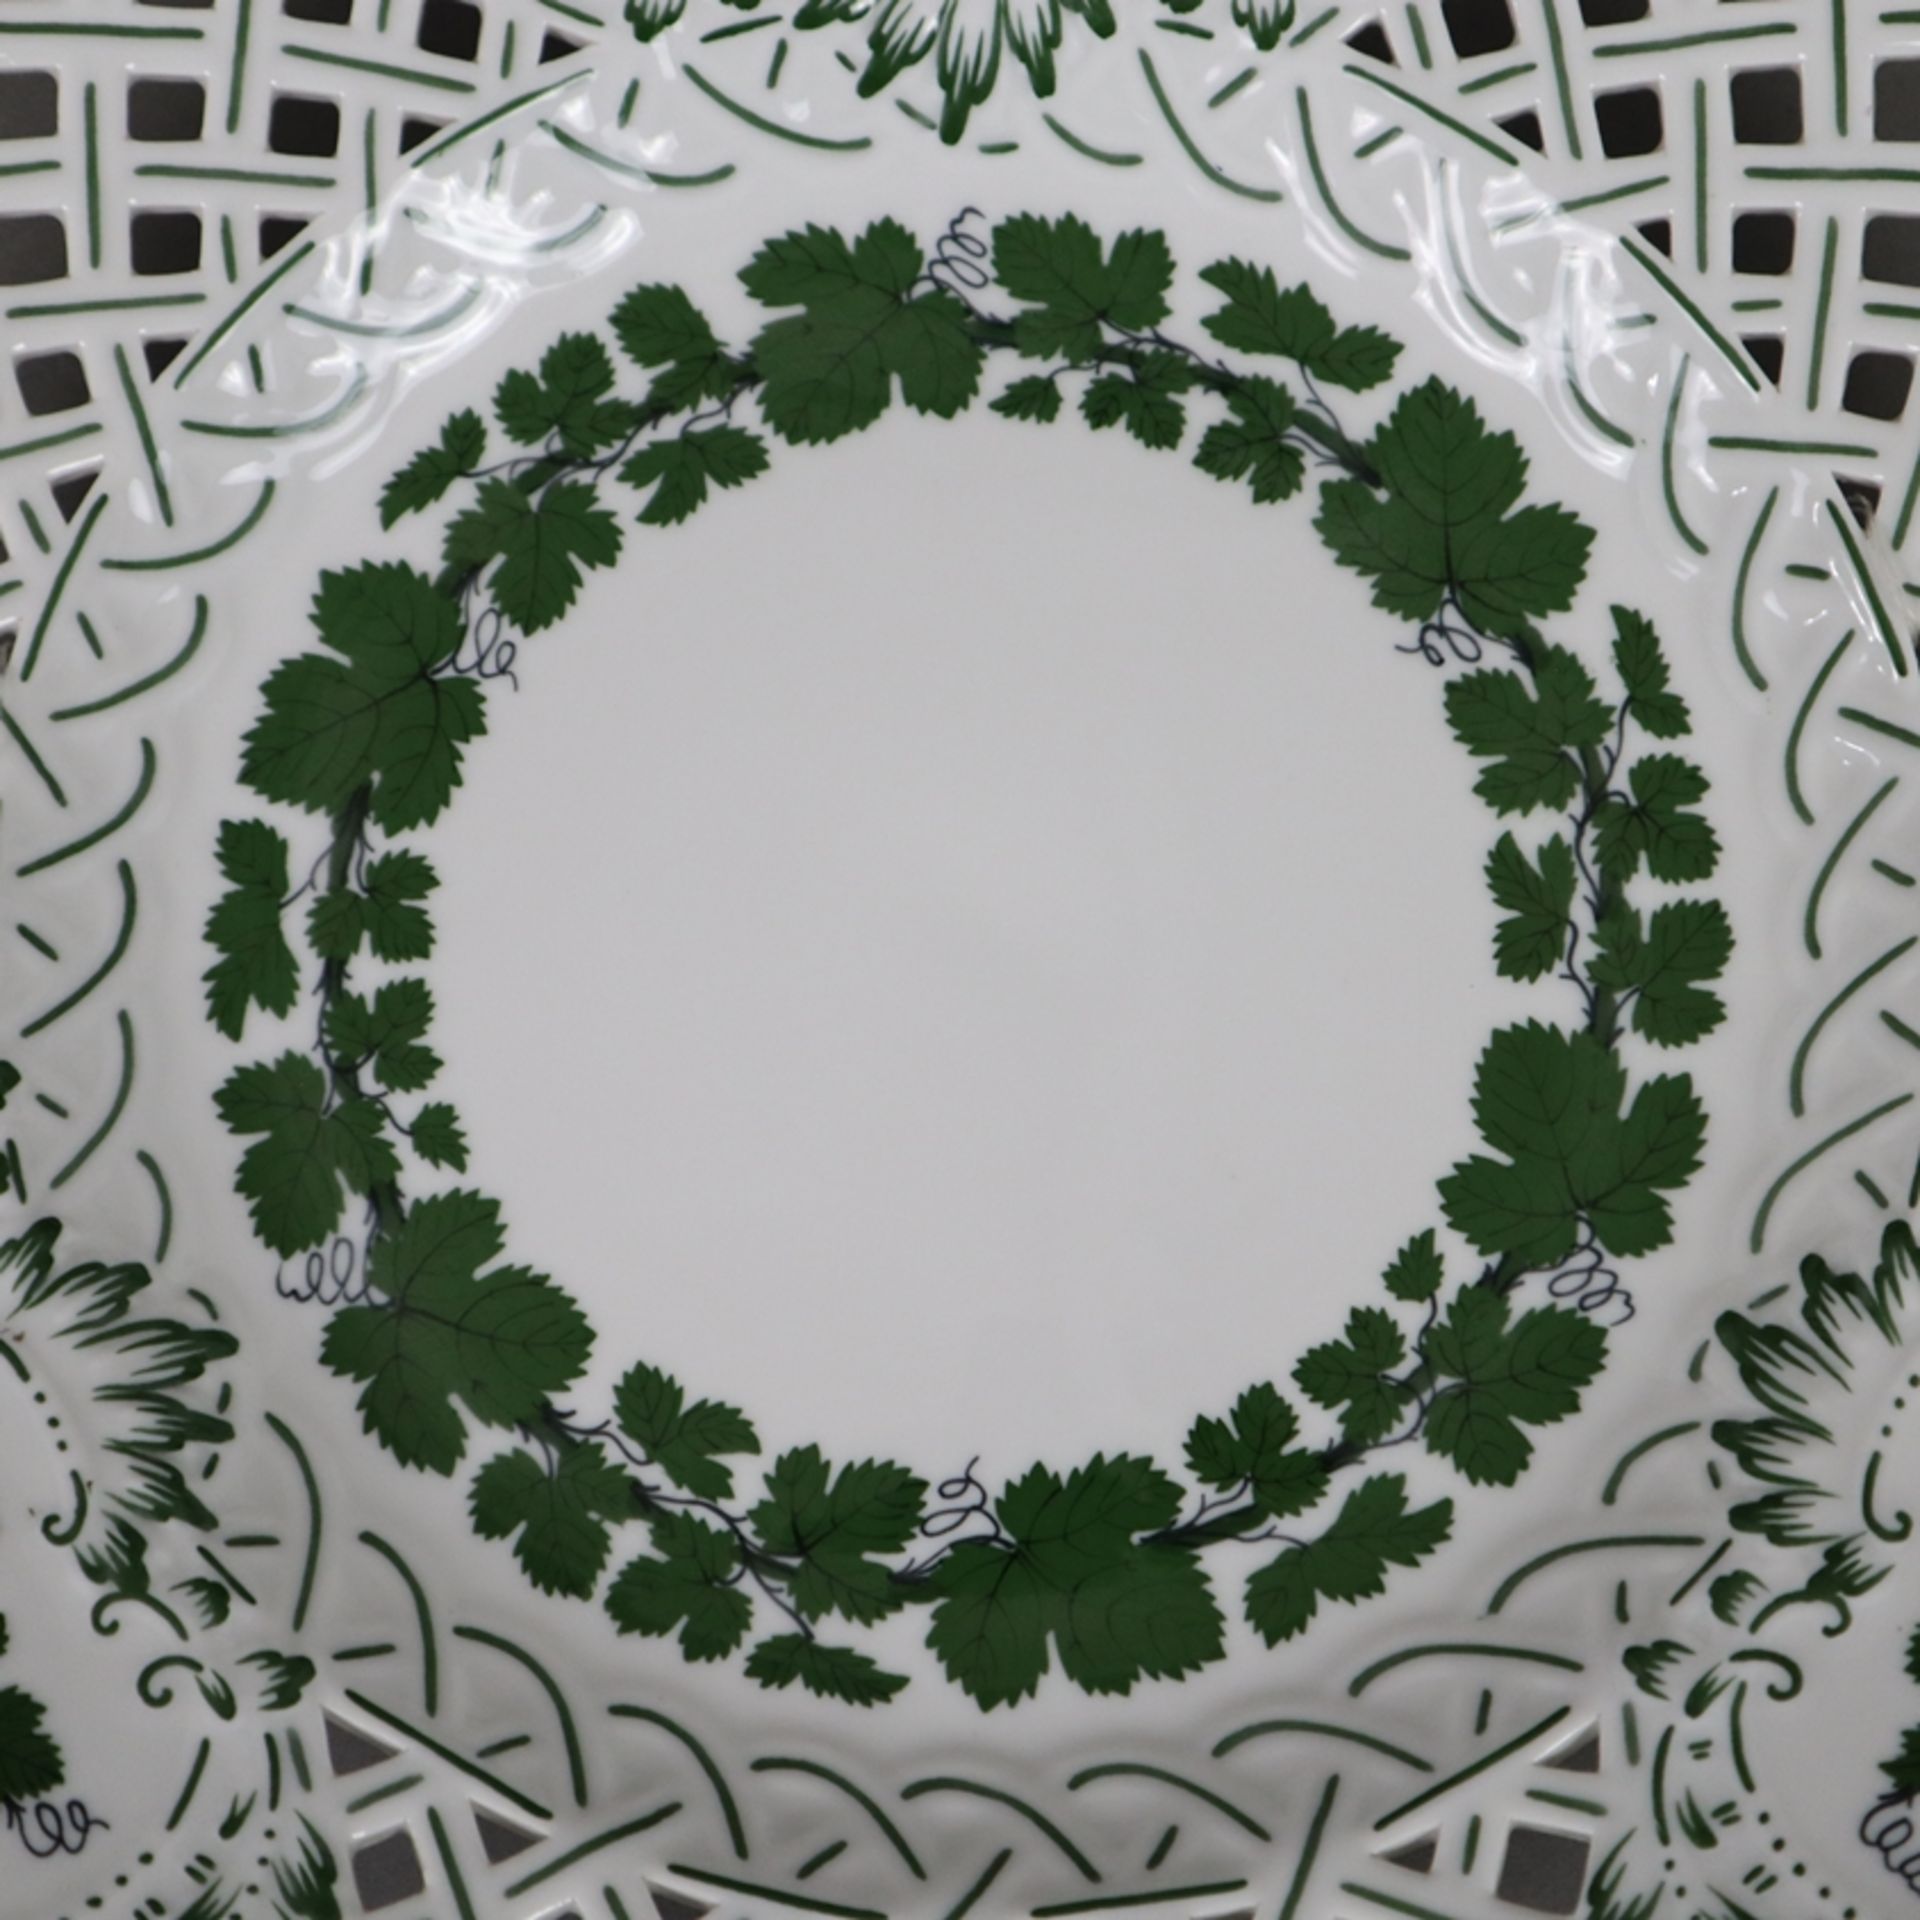 Zierteller - Meissen, Porzellan, Weinlaubdekor in Grün und Schwarz, runde Form mit durchbrochen gea - Image 2 of 5